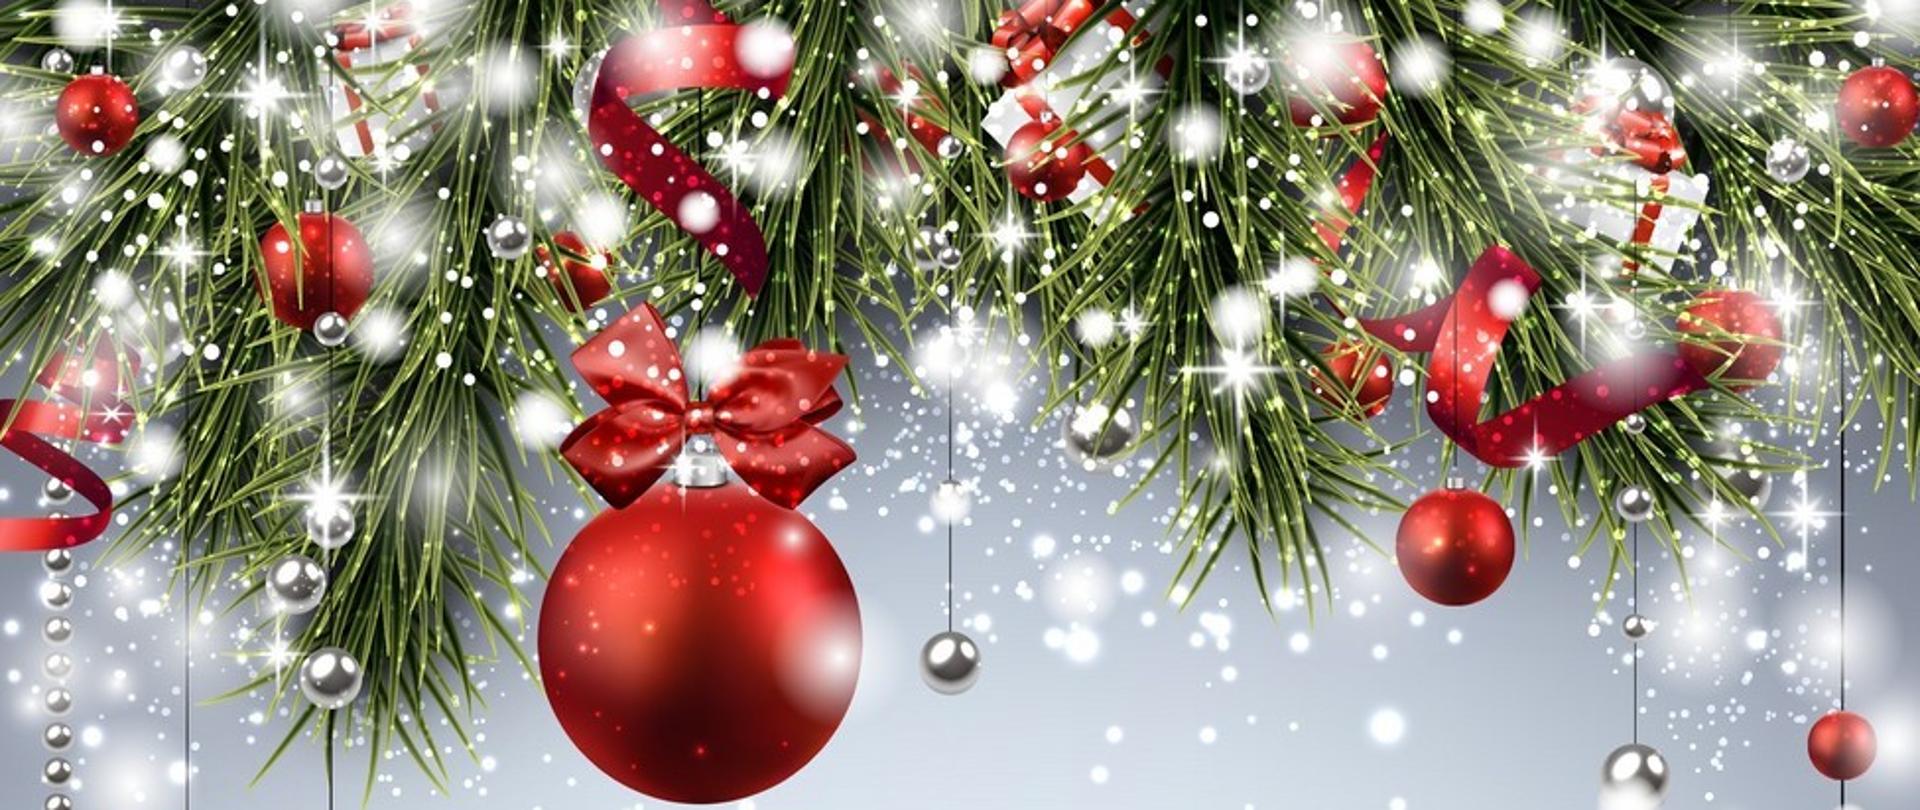 Życzenia Bożonarodzeniowe Komendanta Powiatowego PSP w Bielsku Podlaskim na tle czerwonych bąbek